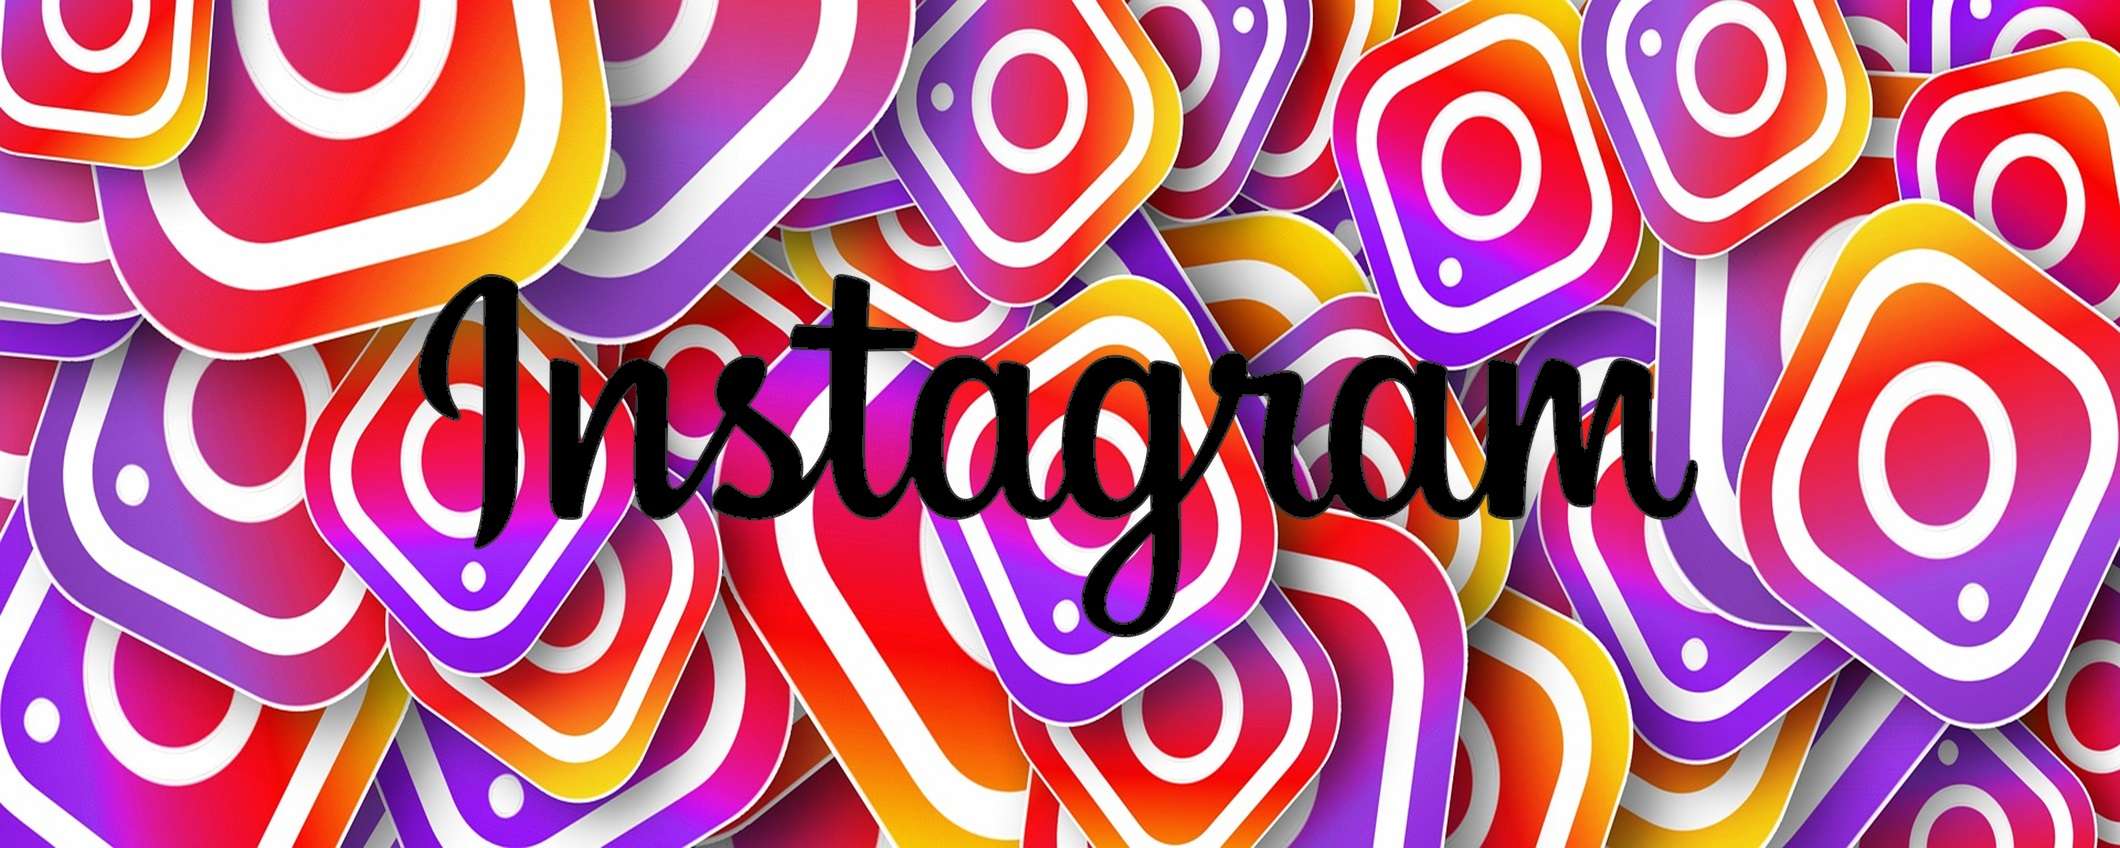 Come condividere i post su Instagram con gli amici più stretti